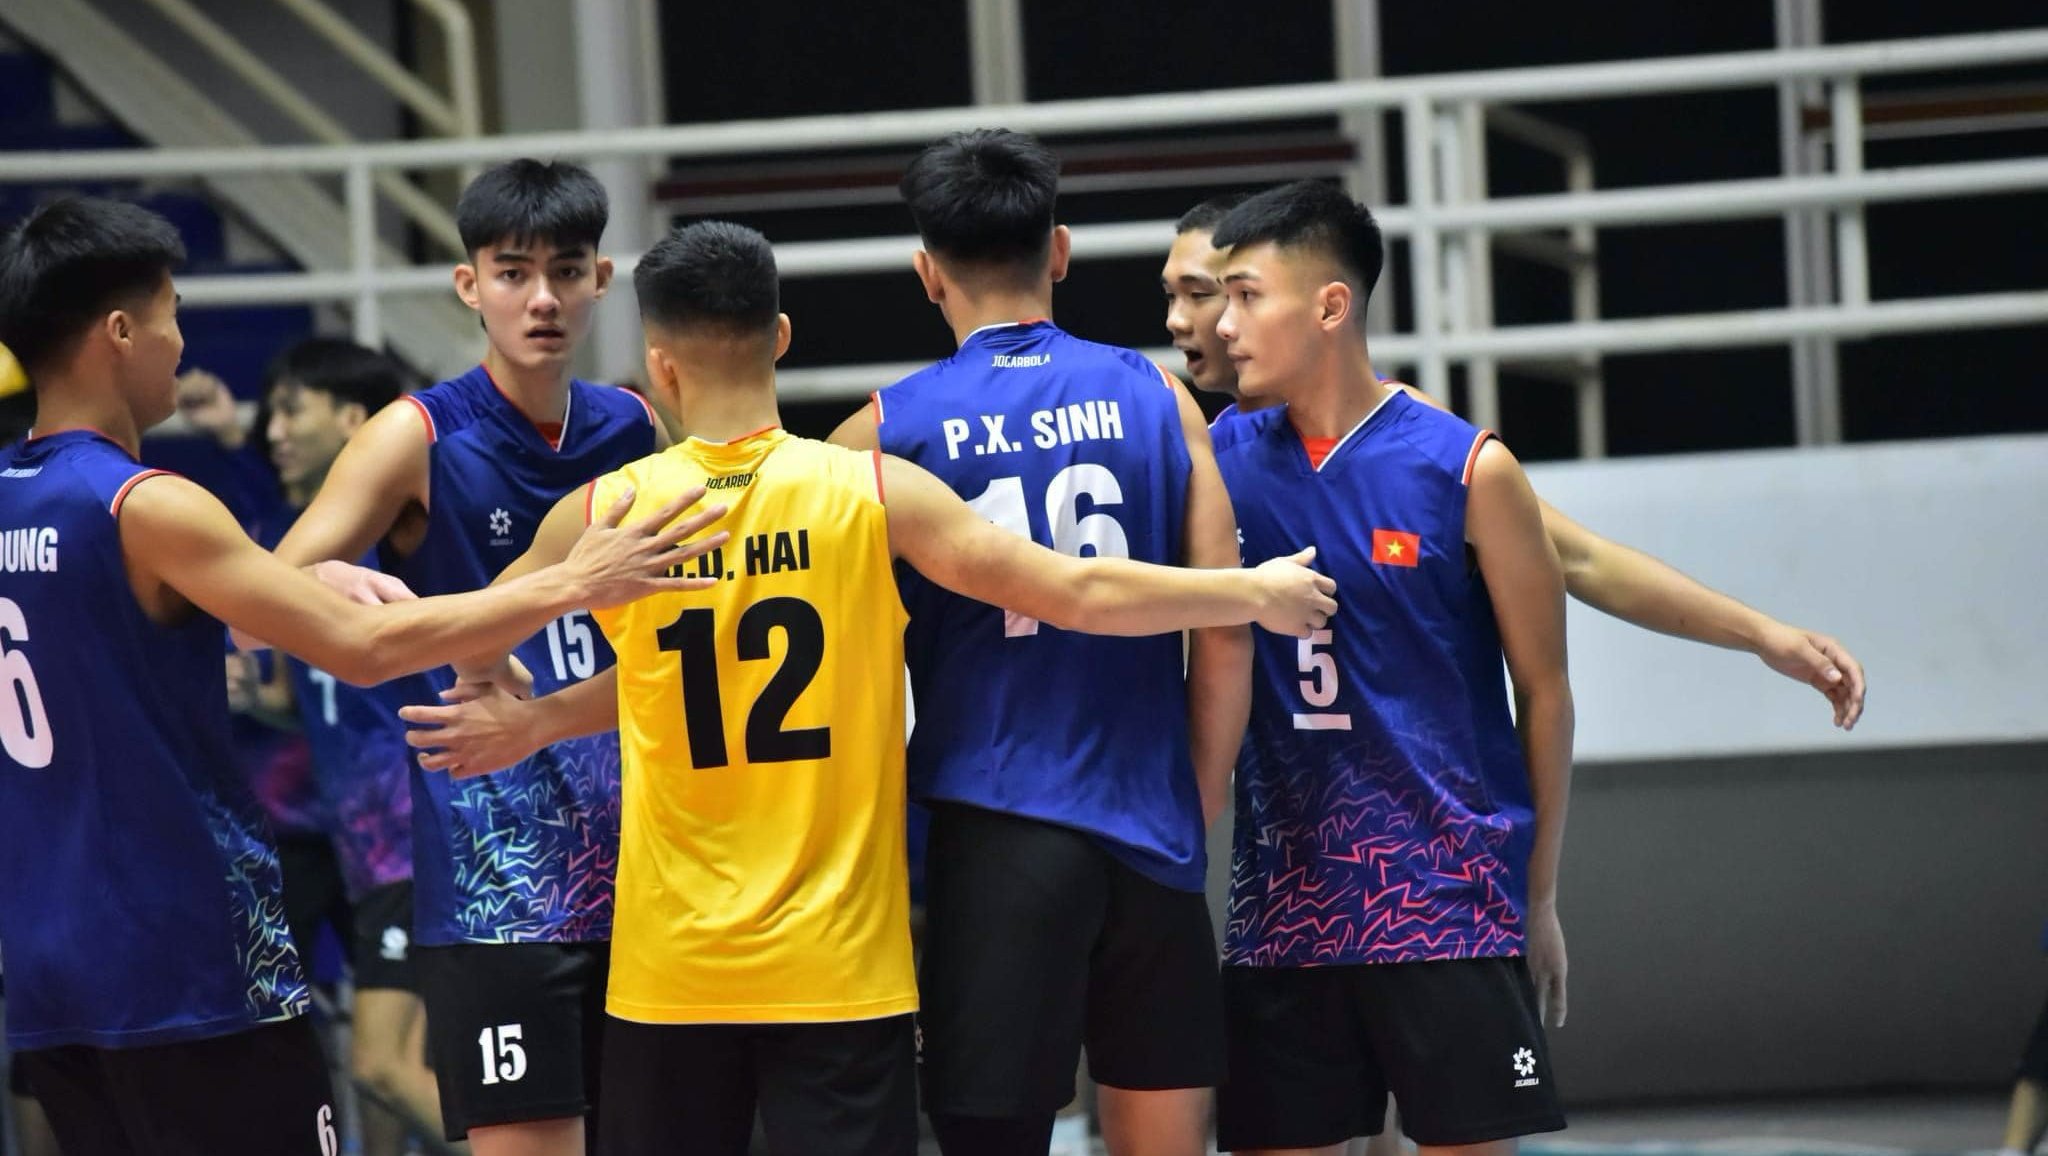 Tuyển bóng chuyền nam U20 Việt Nam thua đáng trách, nhường vé đi tiếp cho người Thái